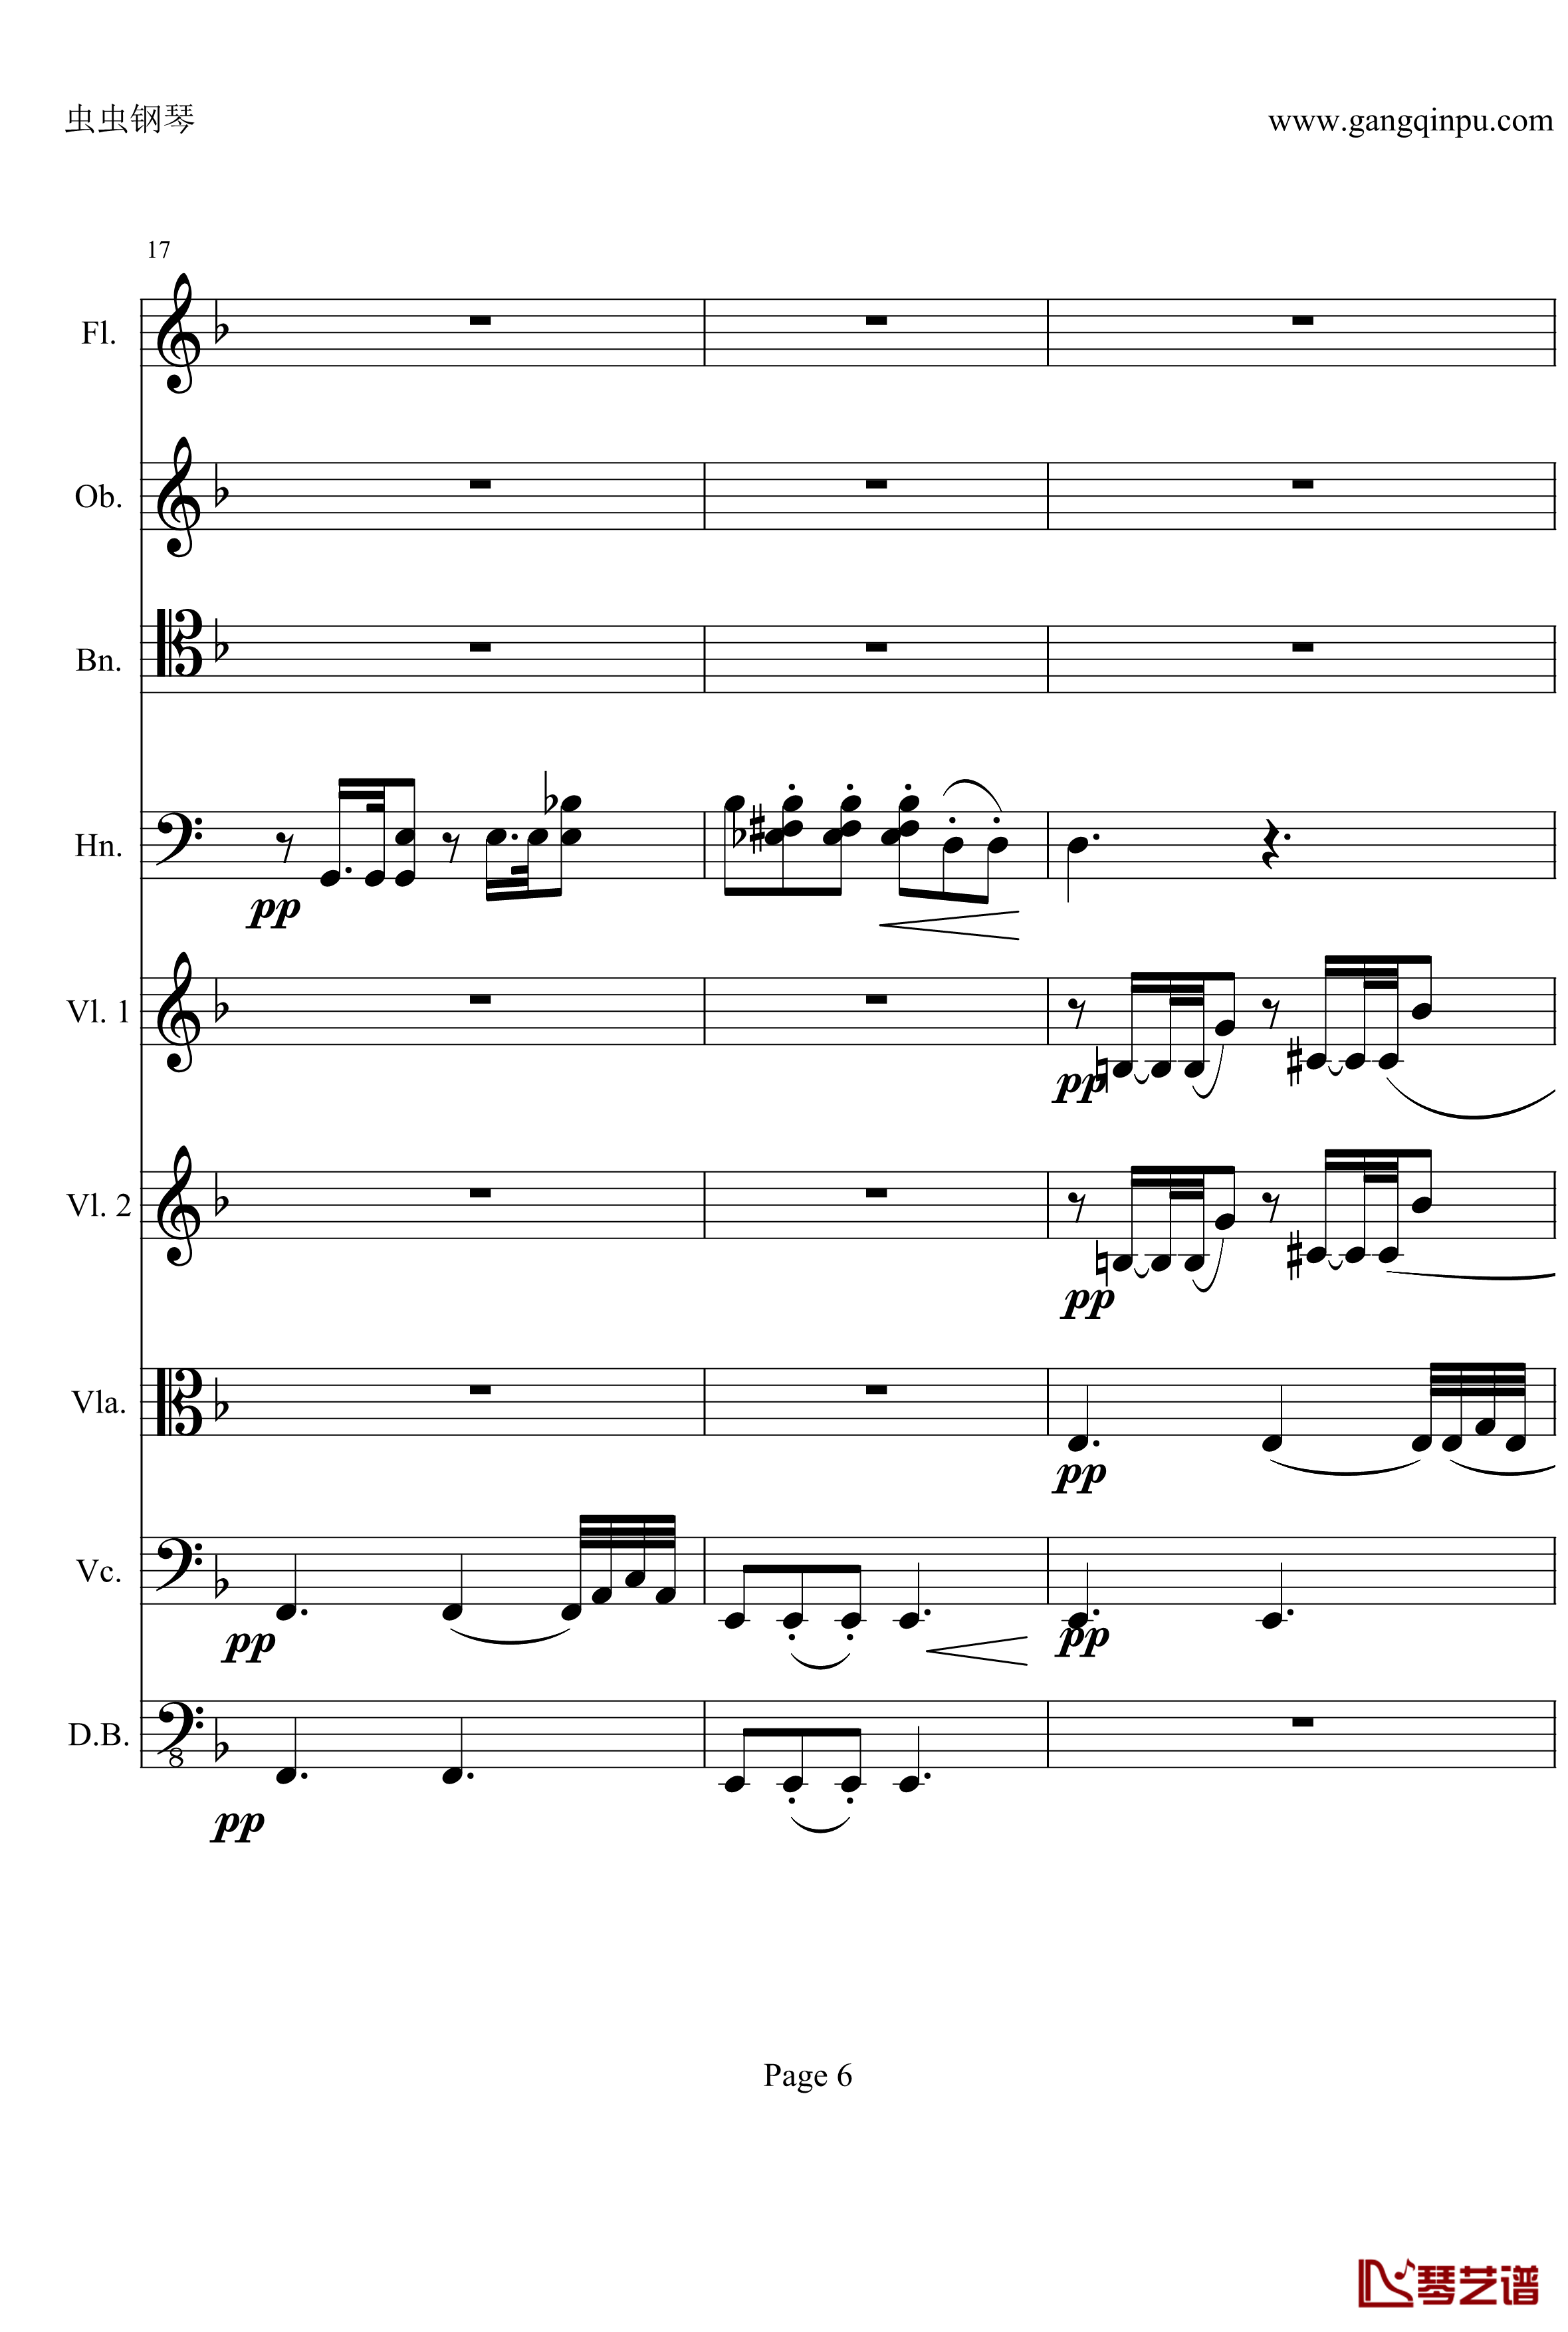 奏鸣曲之交响钢琴谱-第21-Ⅱ-贝多芬-beethoven6